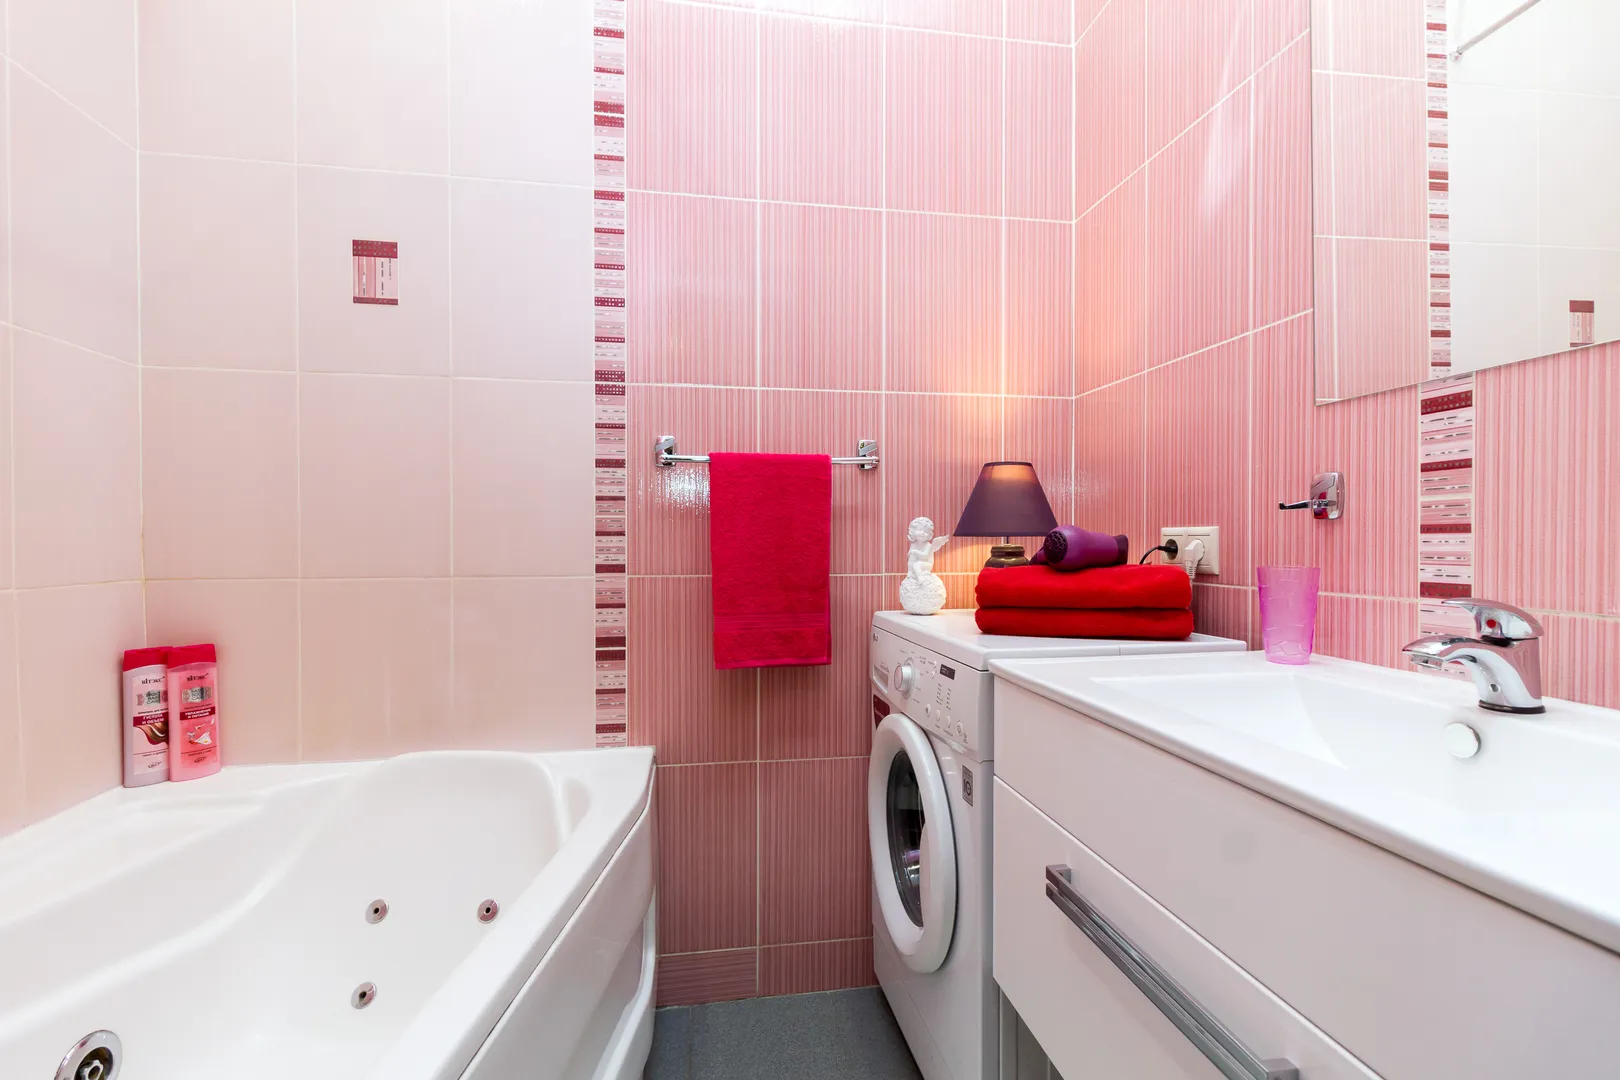 Просторная ванная комната. Жидкое мыло, шампунь, гель душ, фен, полотенца и прочие мелочи для Вас